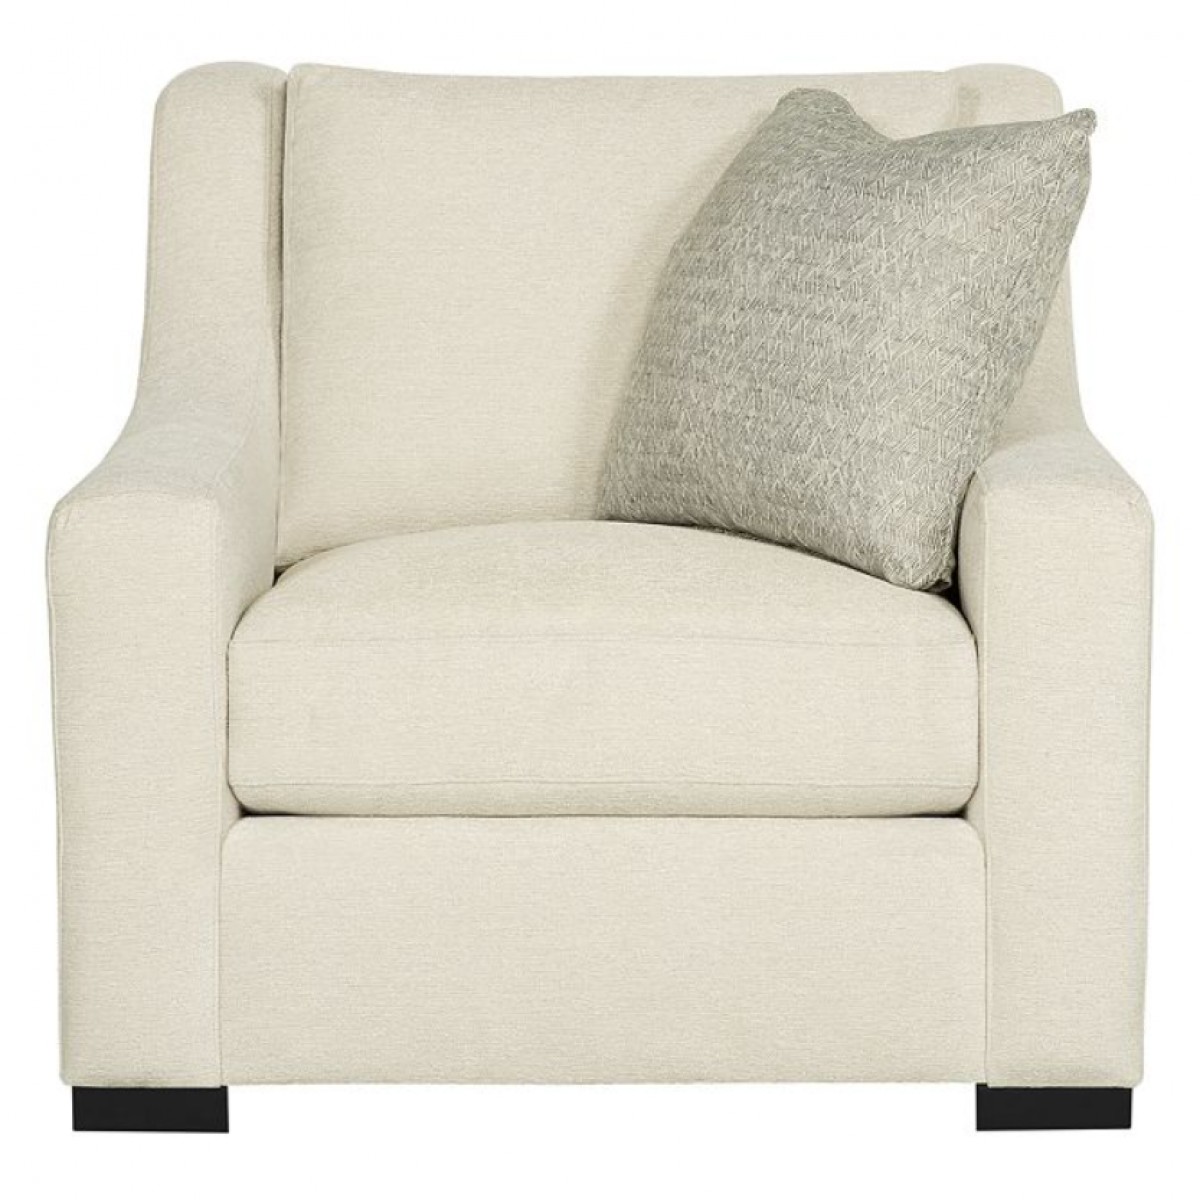 Germain Chair (Fabric)